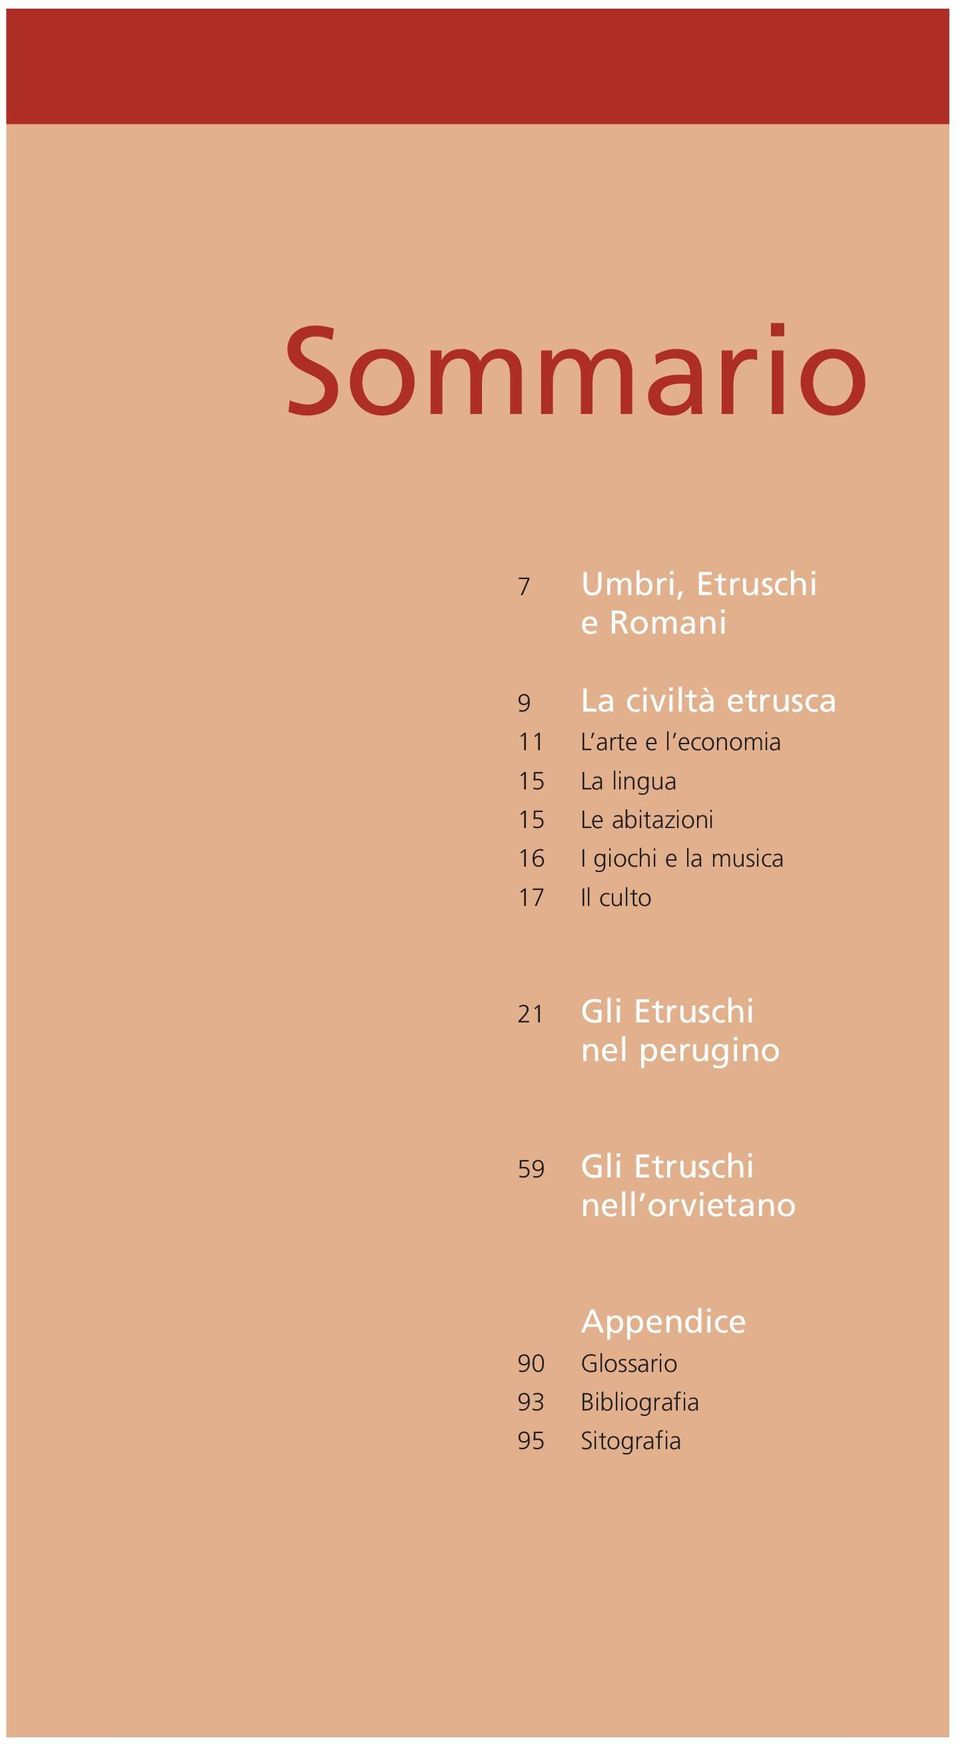 musica 17 Il culto 21 Gli Etruschi nel perugino 59 Gli Etruschi